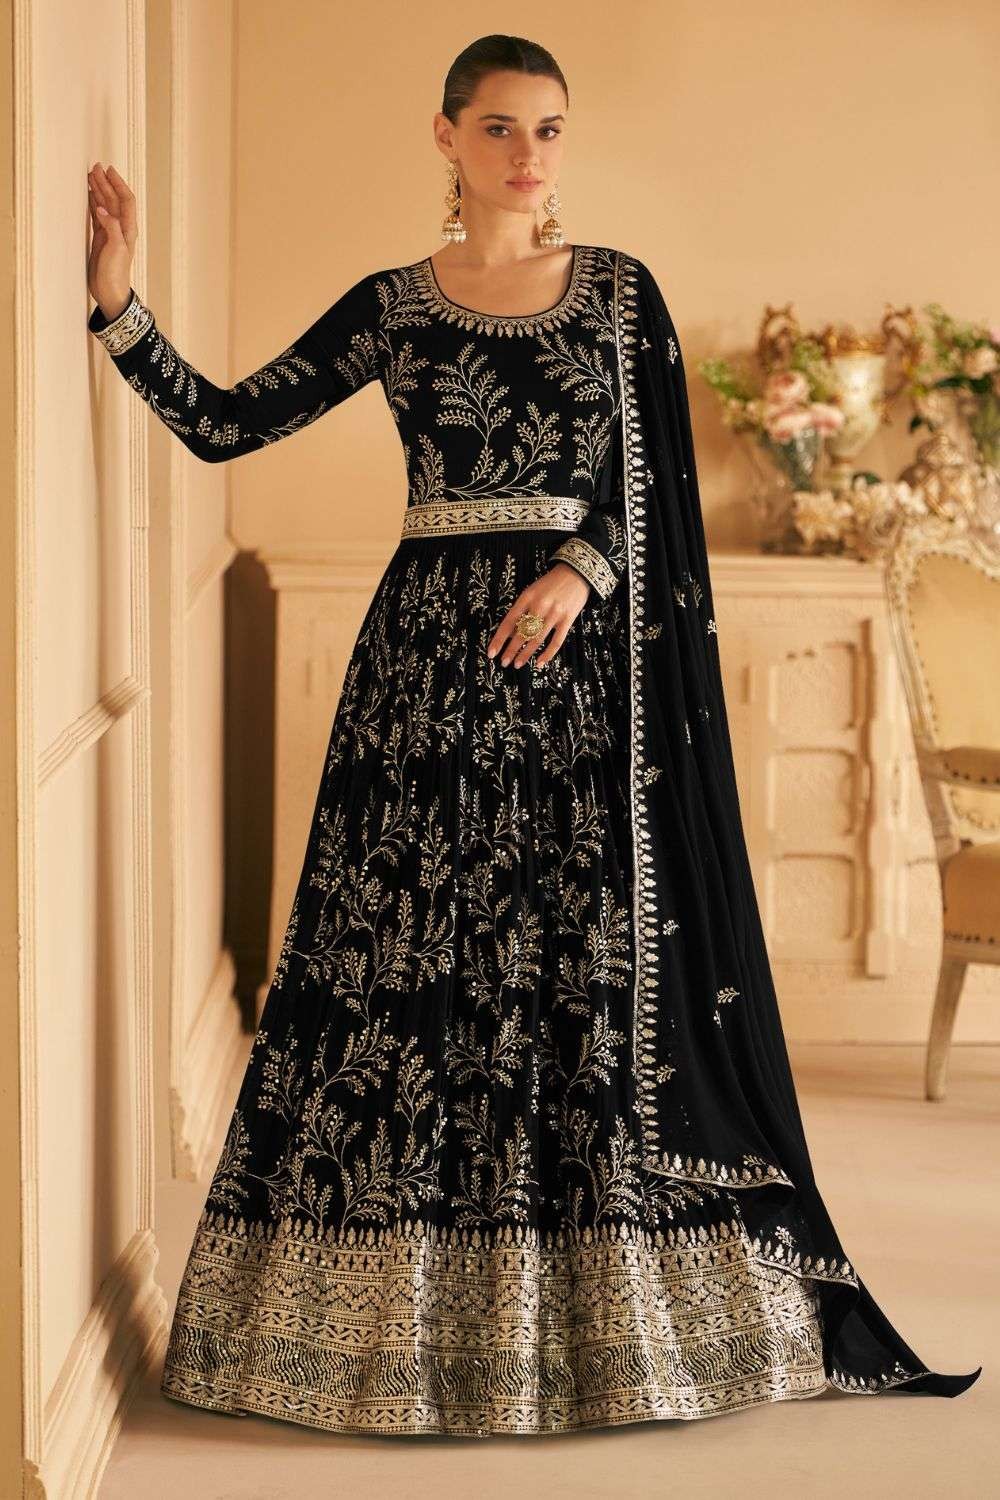 Black Anarkali Dress Readymade Dupatta Set Gown Salwar Suit Stitched NF3426  | eBay